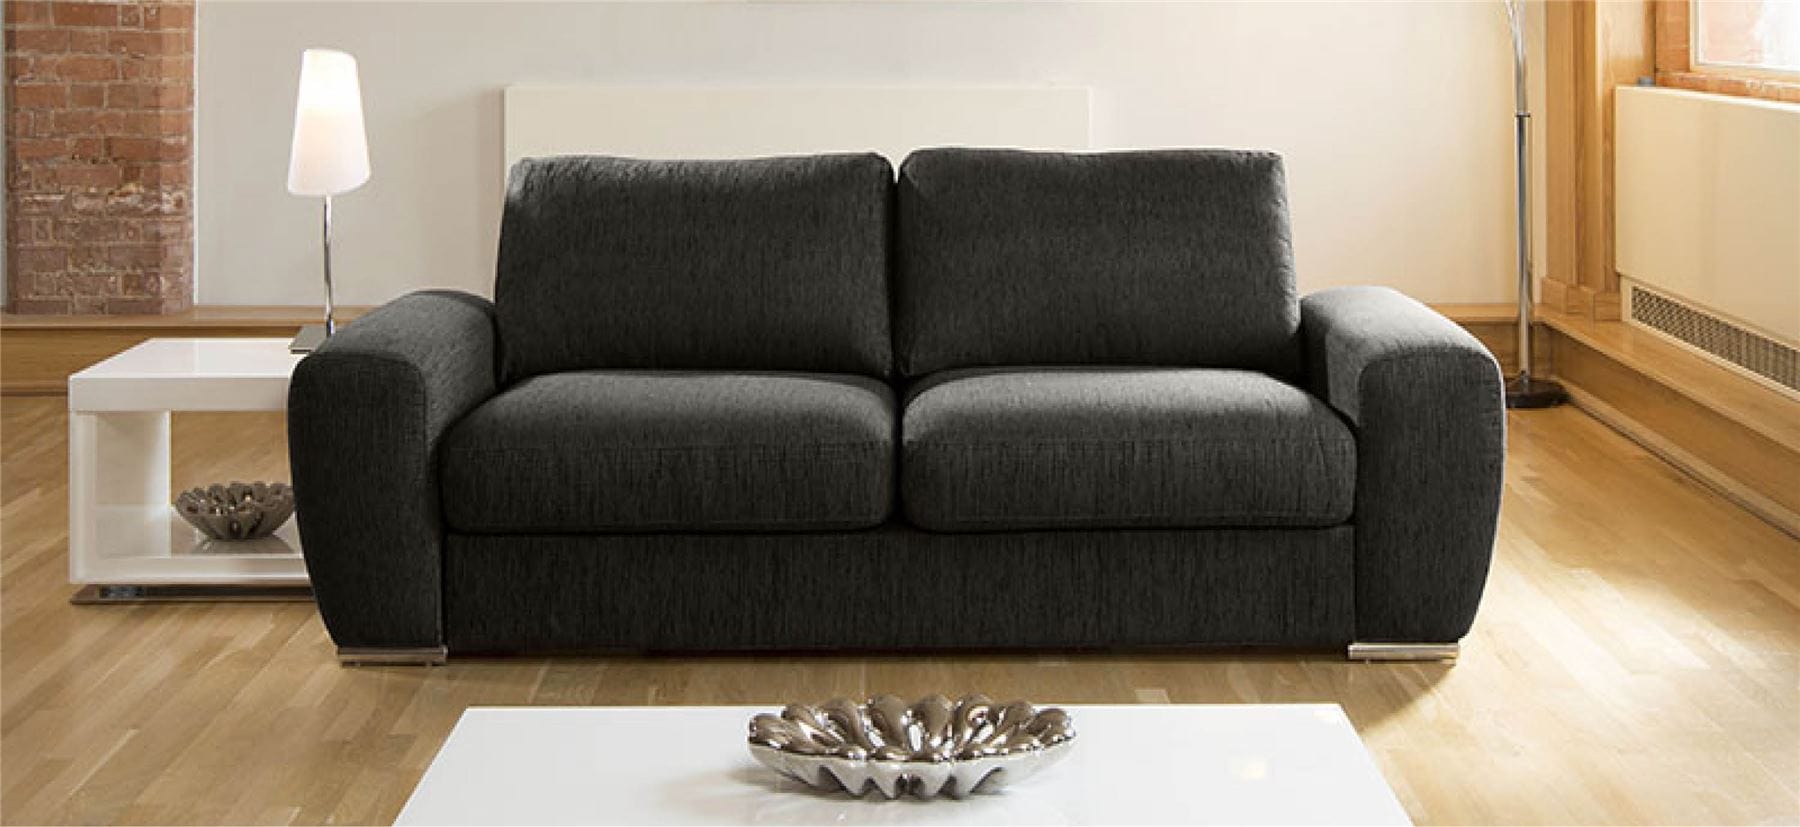 Quatropi Quatropi Luxury Large Modern 3 Seater Sofa Couch 2.4m Grande 3S H Rest